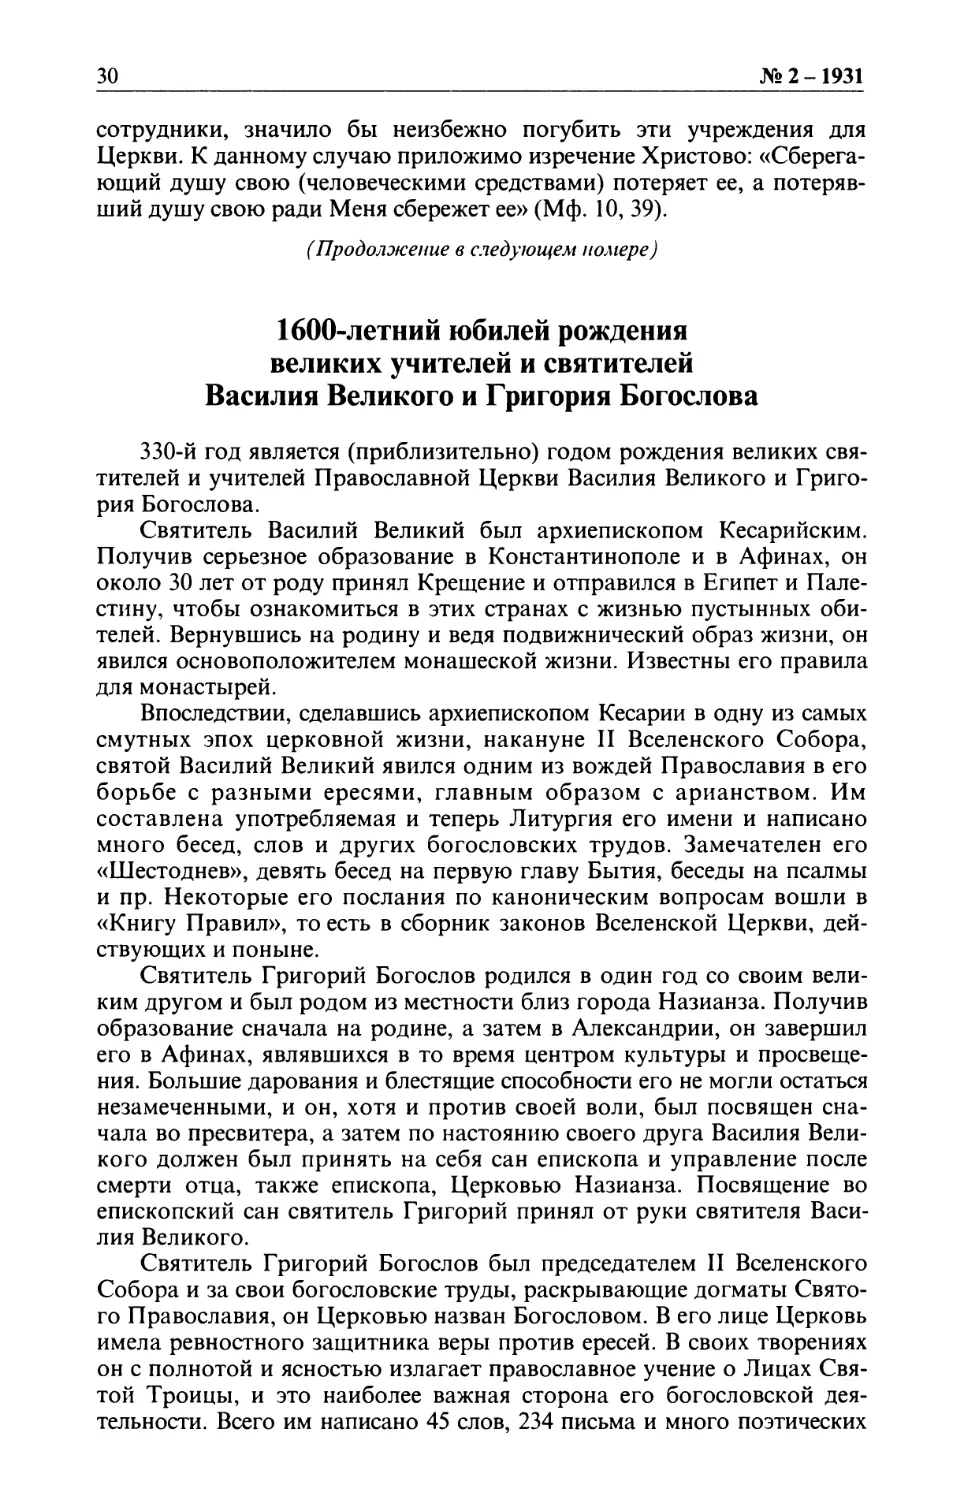 1600-летний юбилей рождения великих учителей и святителей Василия Великого и Григория Богослова